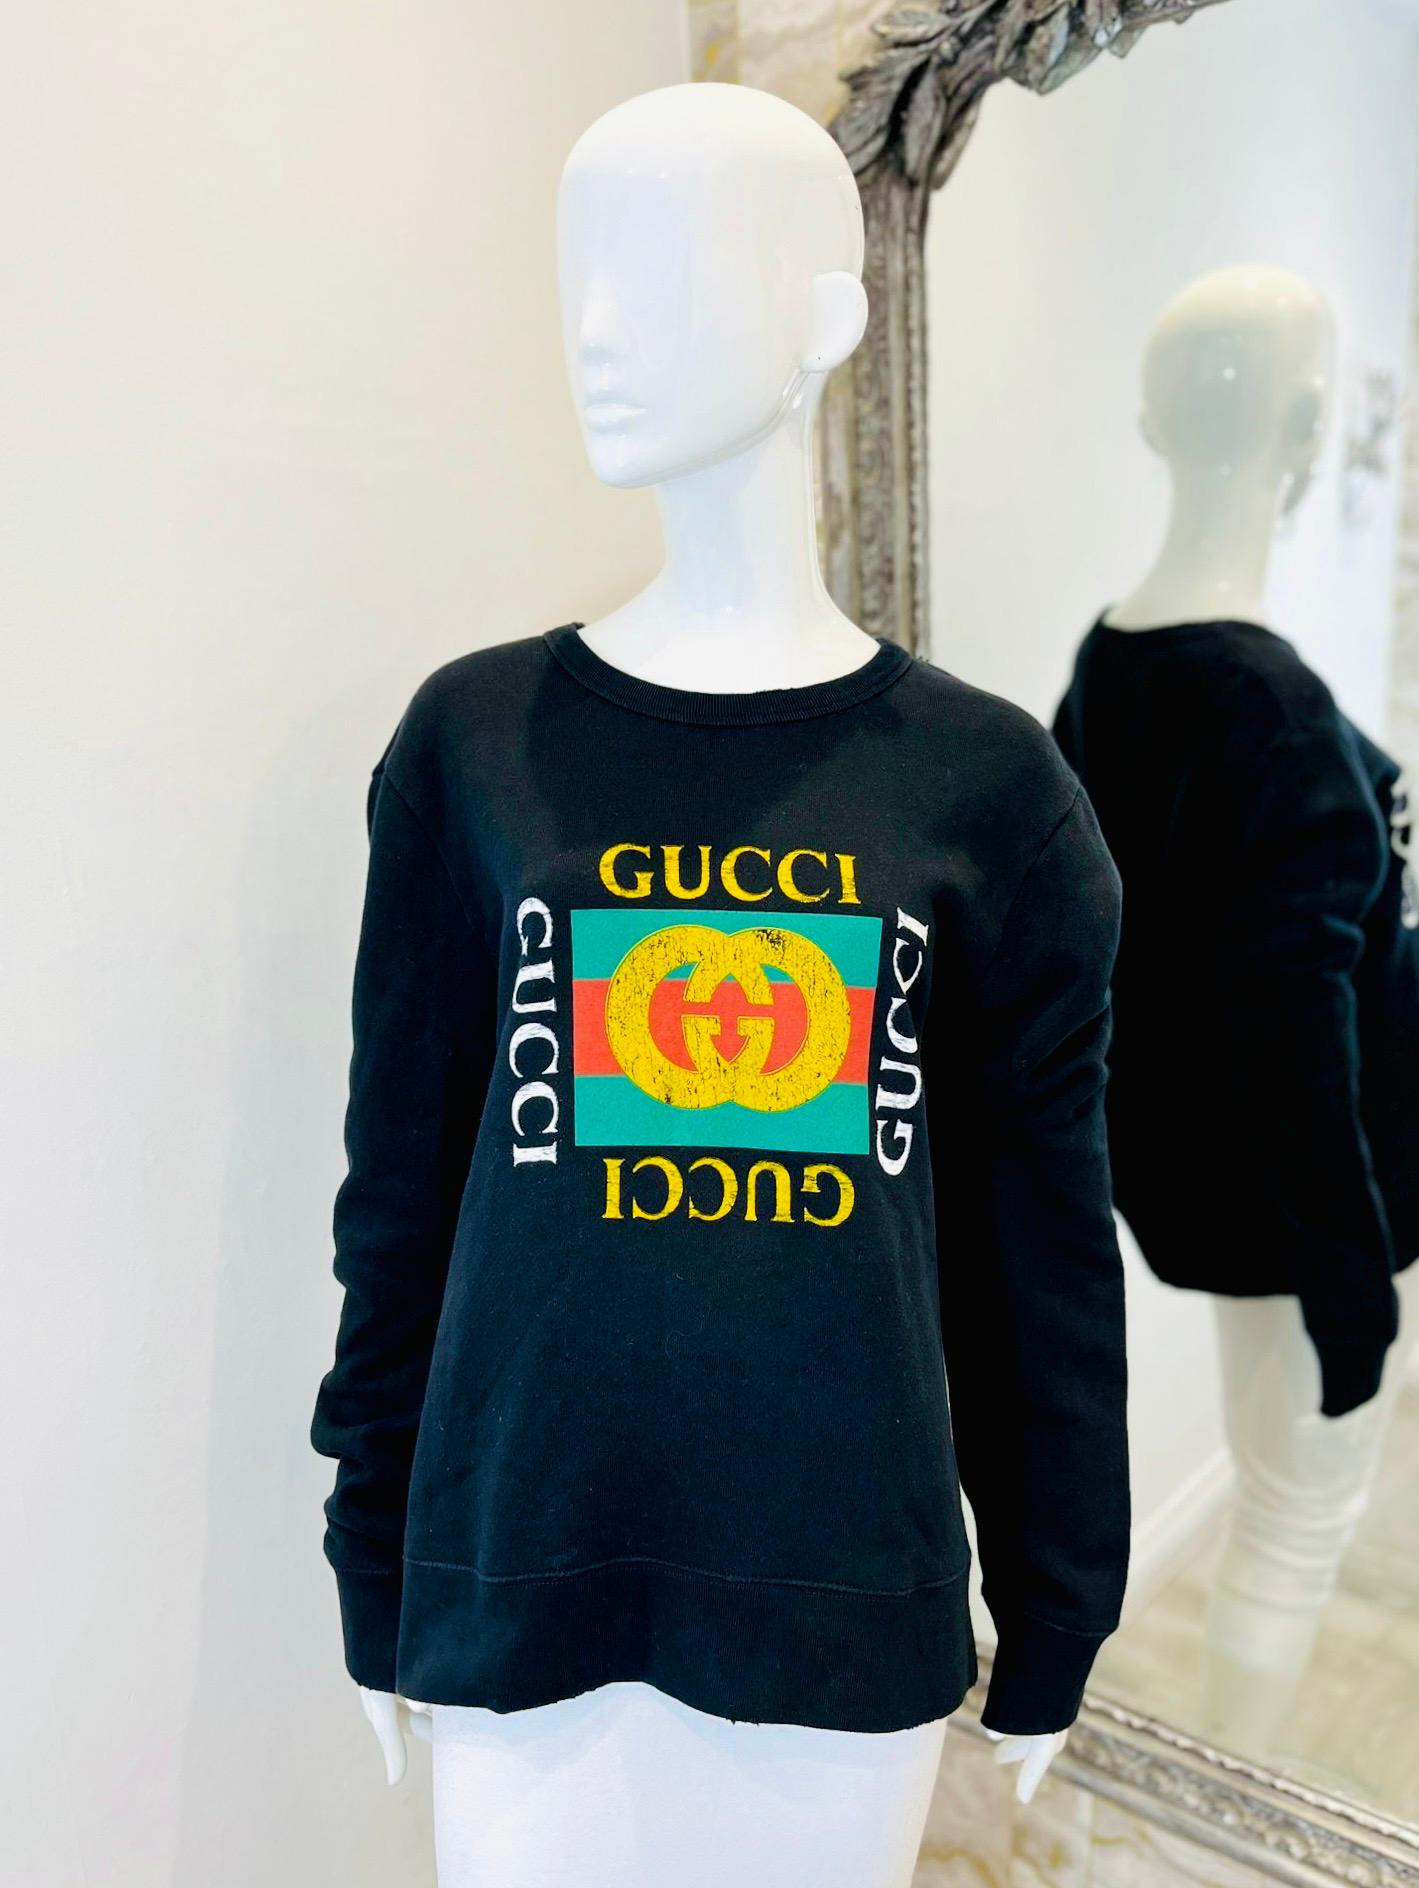 Gucci Logo Sweatshirt aus Baumwolle

Schwarzes, langärmeliges Oberteil mit archiviertem Gucci-Logo aus den 80er Jahren.

Mit Distressed-Effekt, Rundhalsausschnitt und gerippten Bündchen und Saum. Rrp £770

Größe - L

Zustand - Sehr